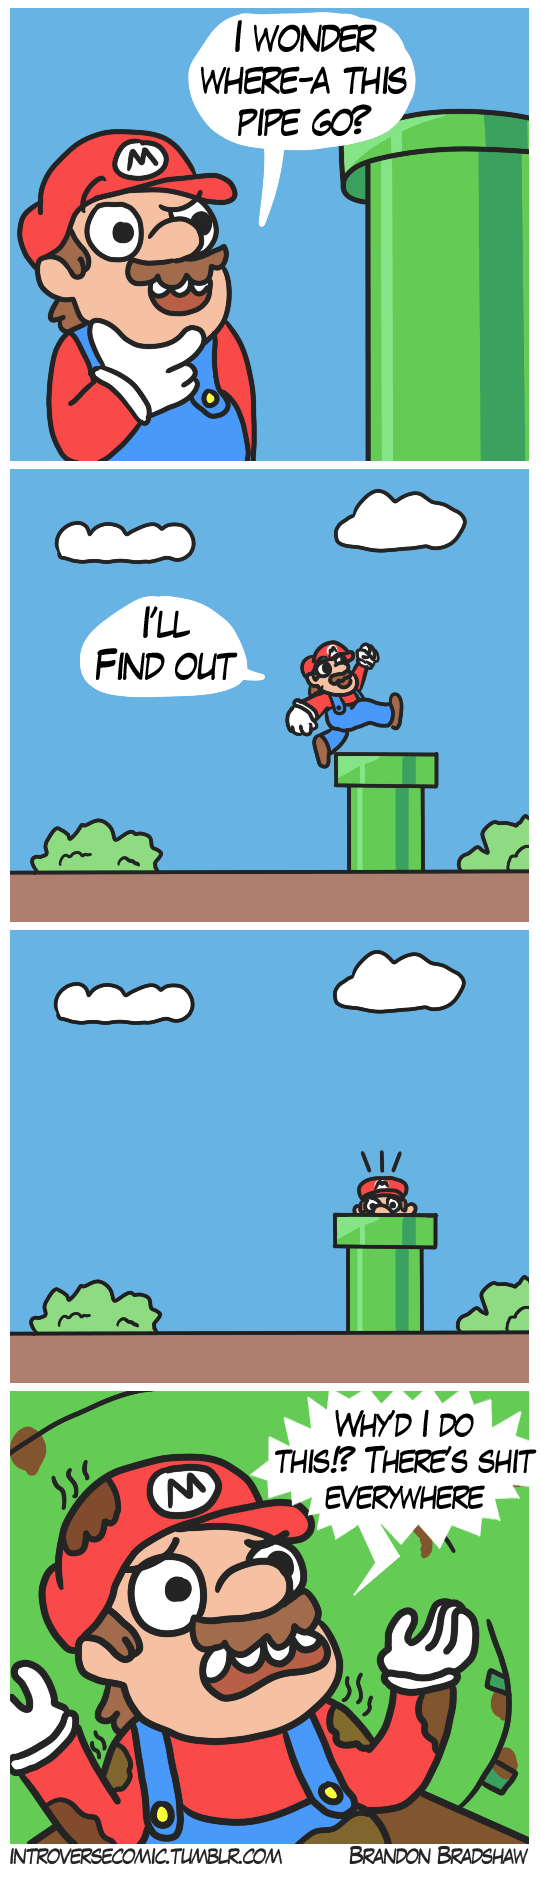 10 Funny Memes Dank Memes Mario Memes Factory Memes - vrogue.co